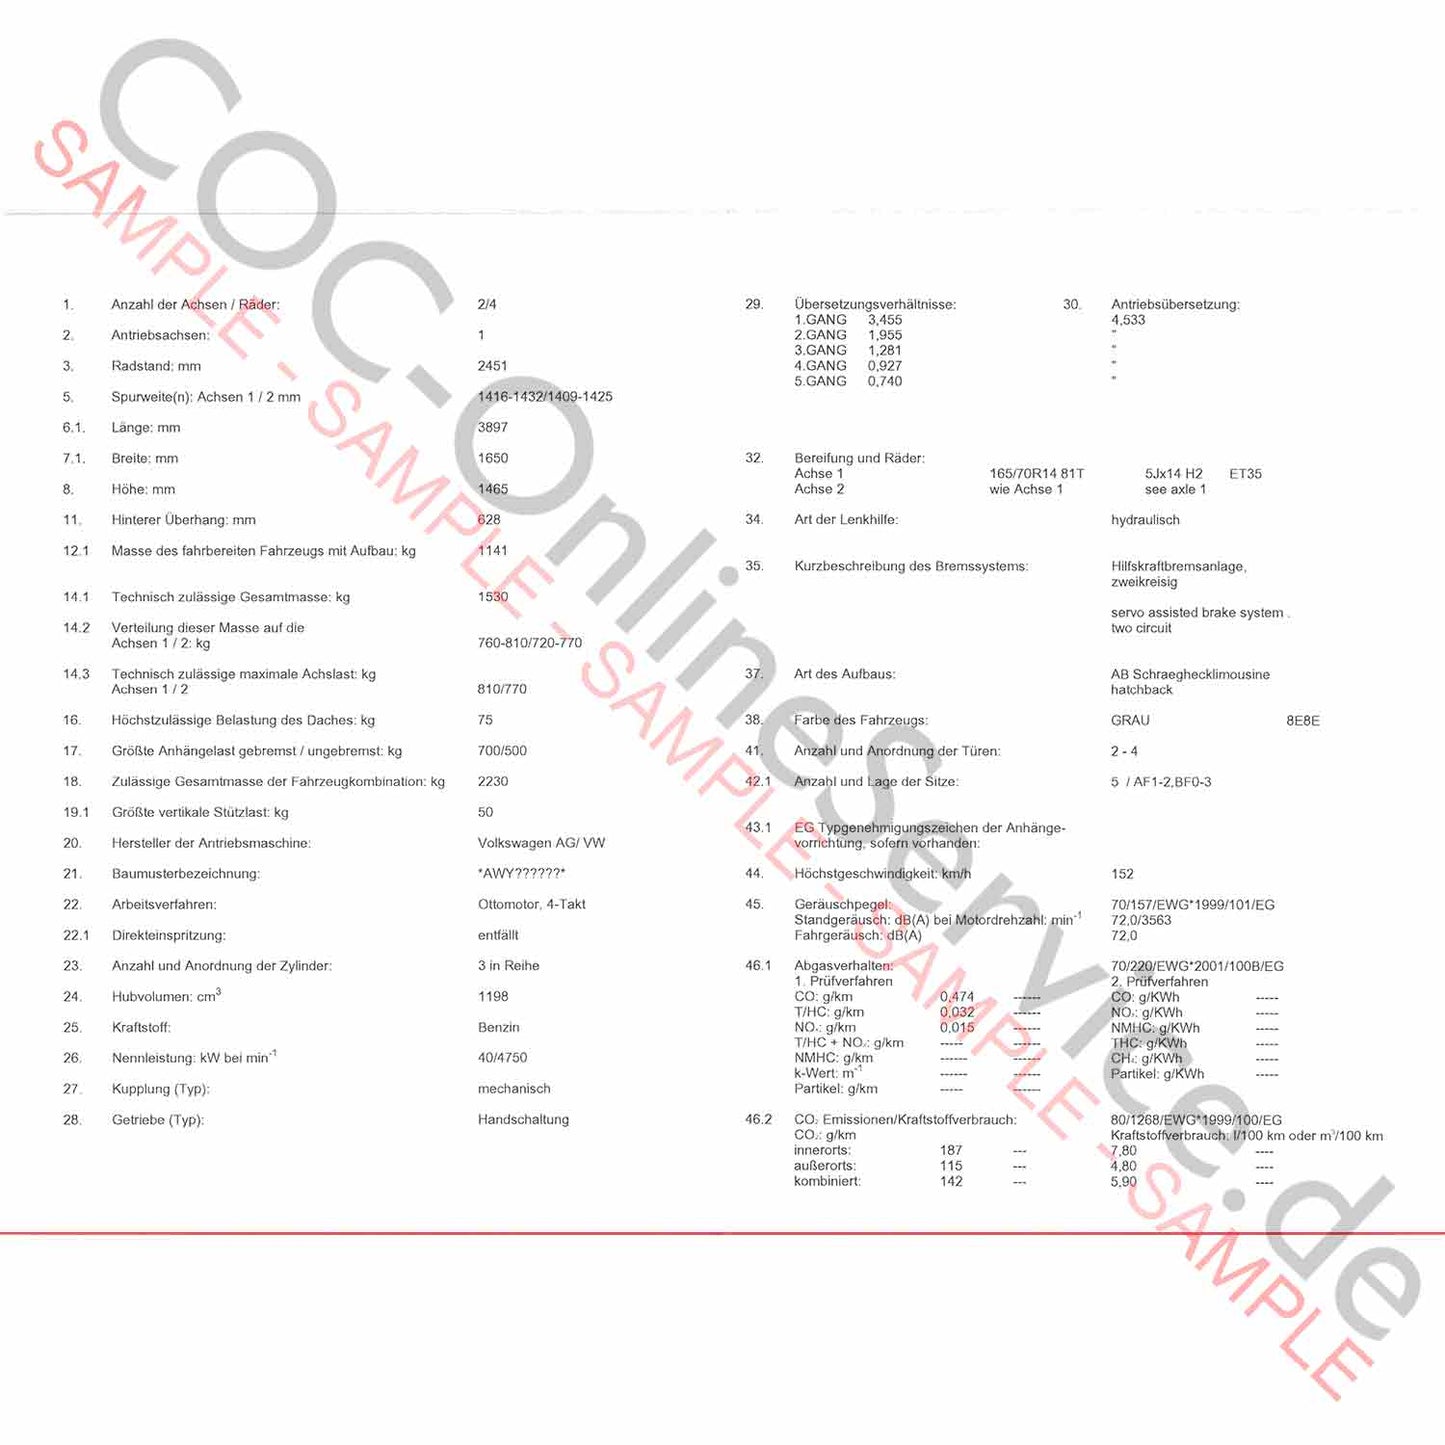 COC Papiere für VW Volkswagen (Certificate of Conformity)